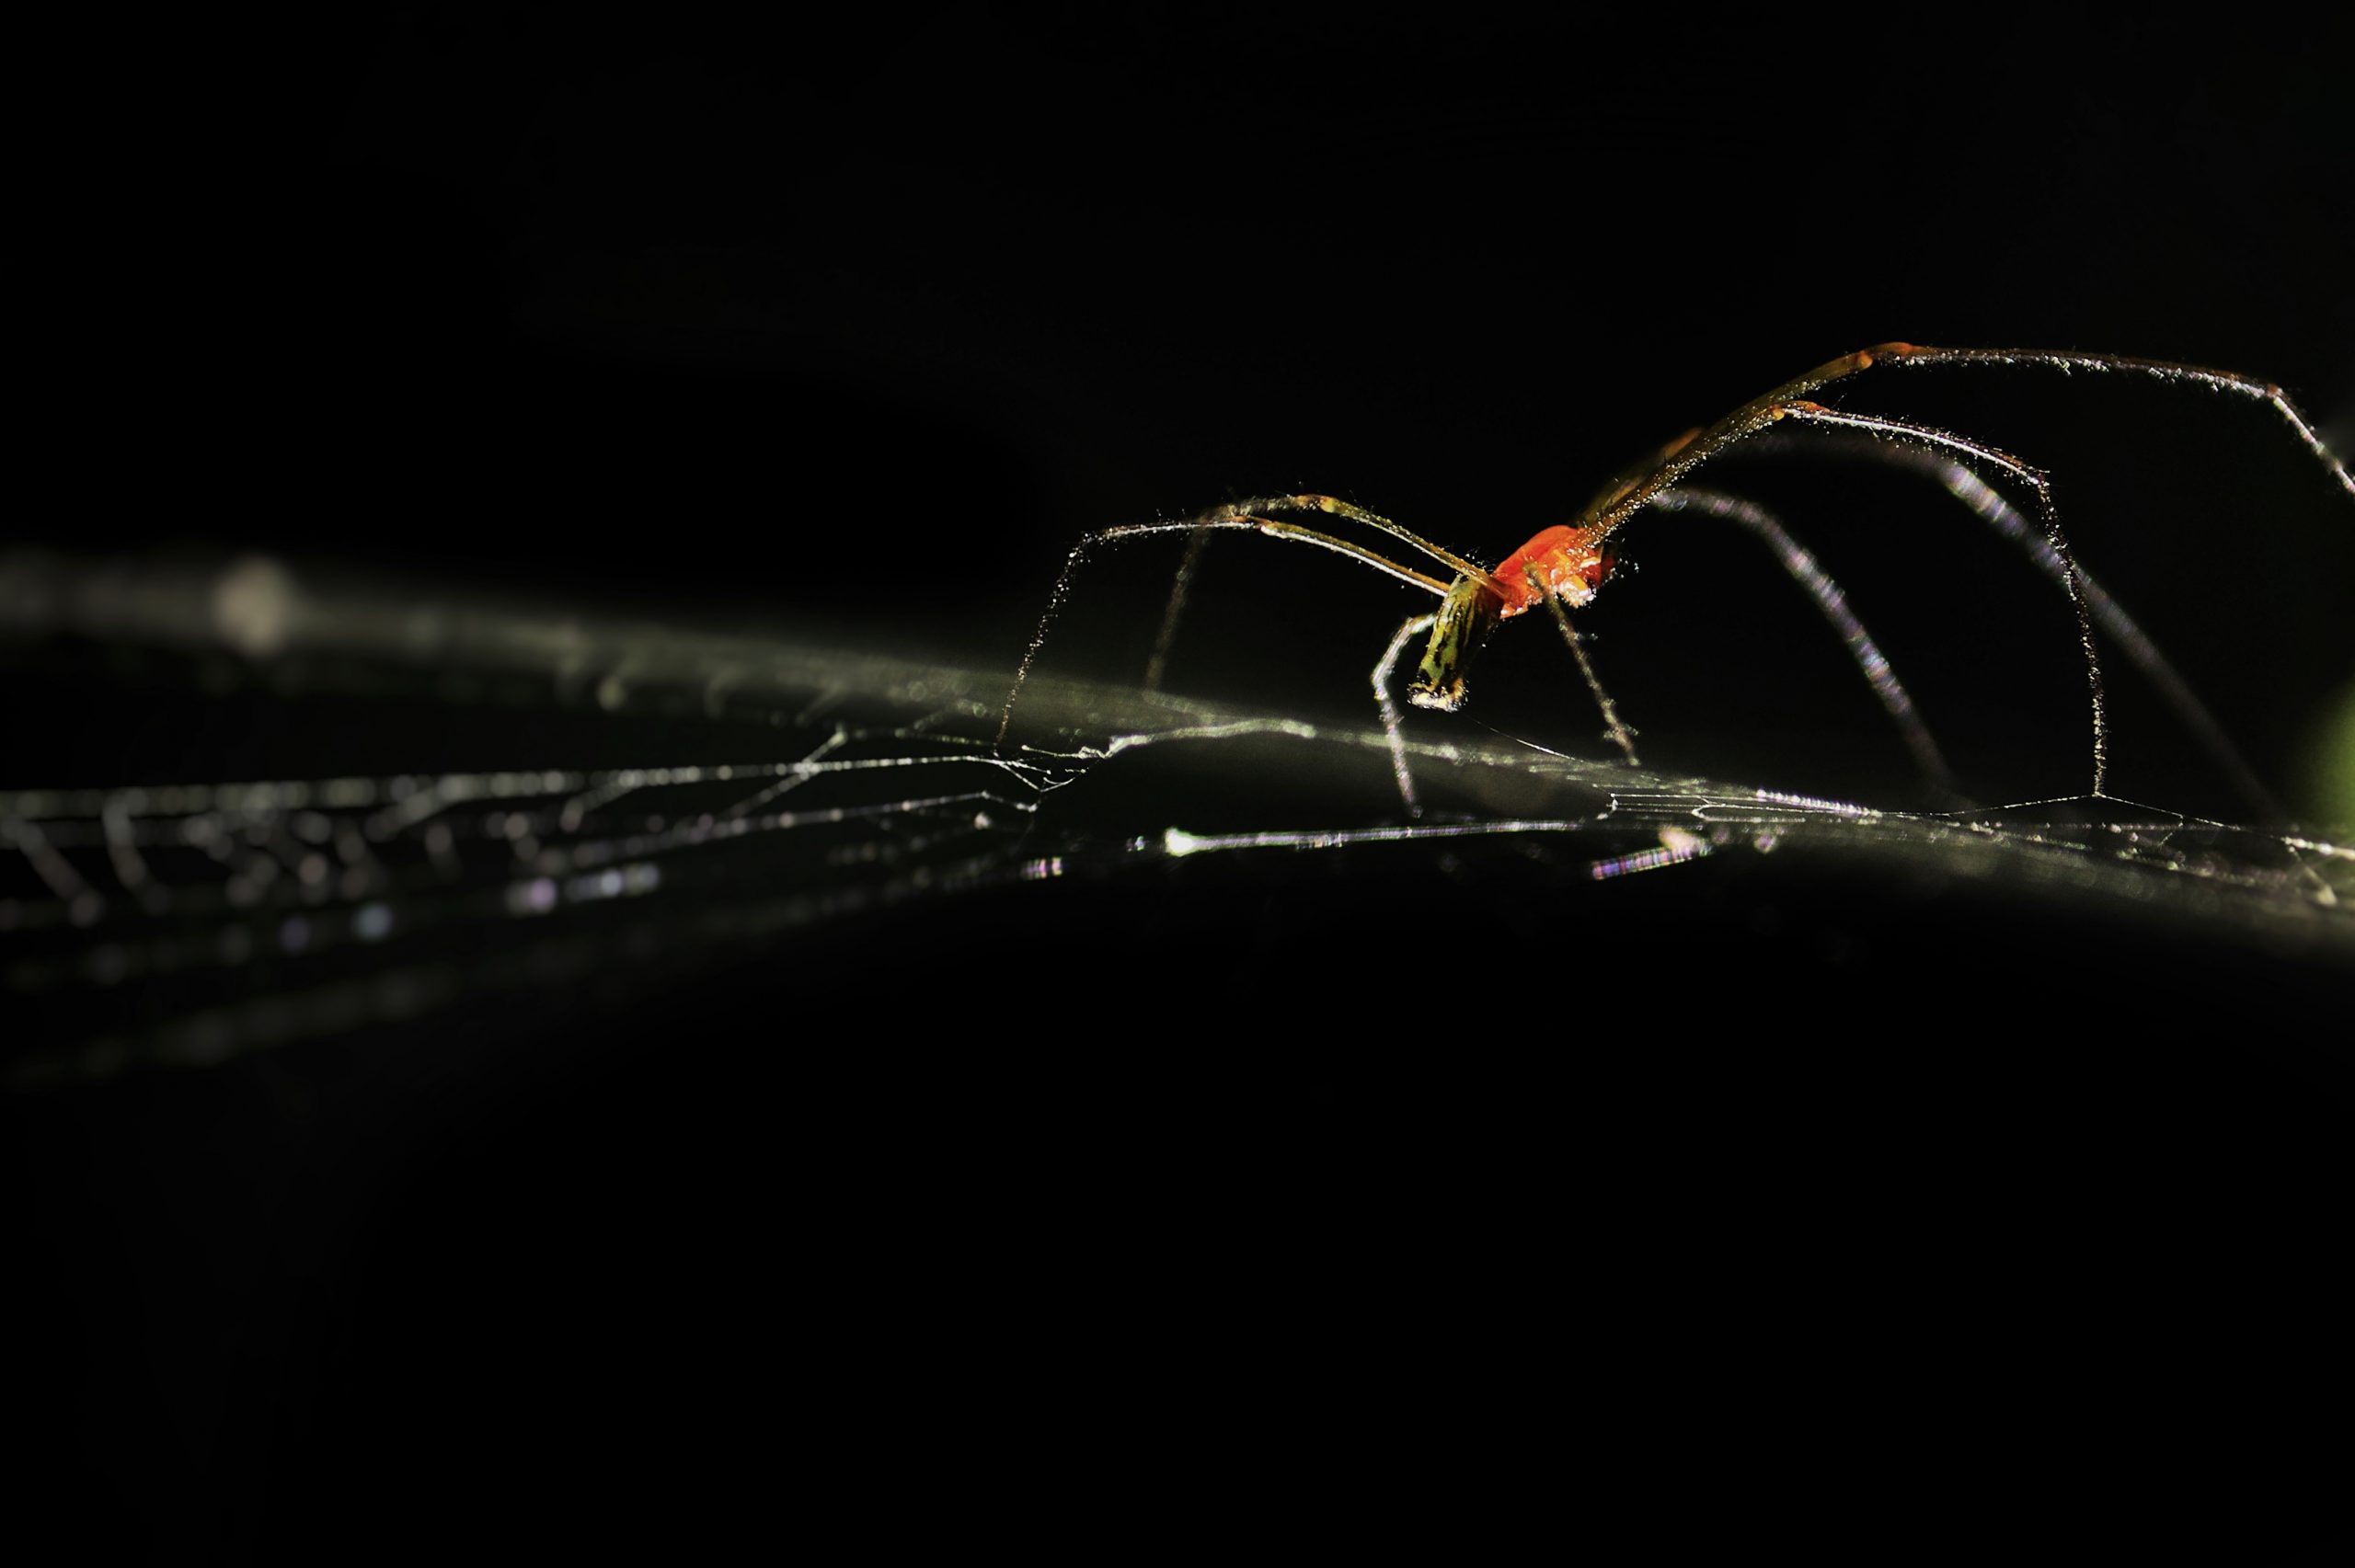 Spider in a dark place